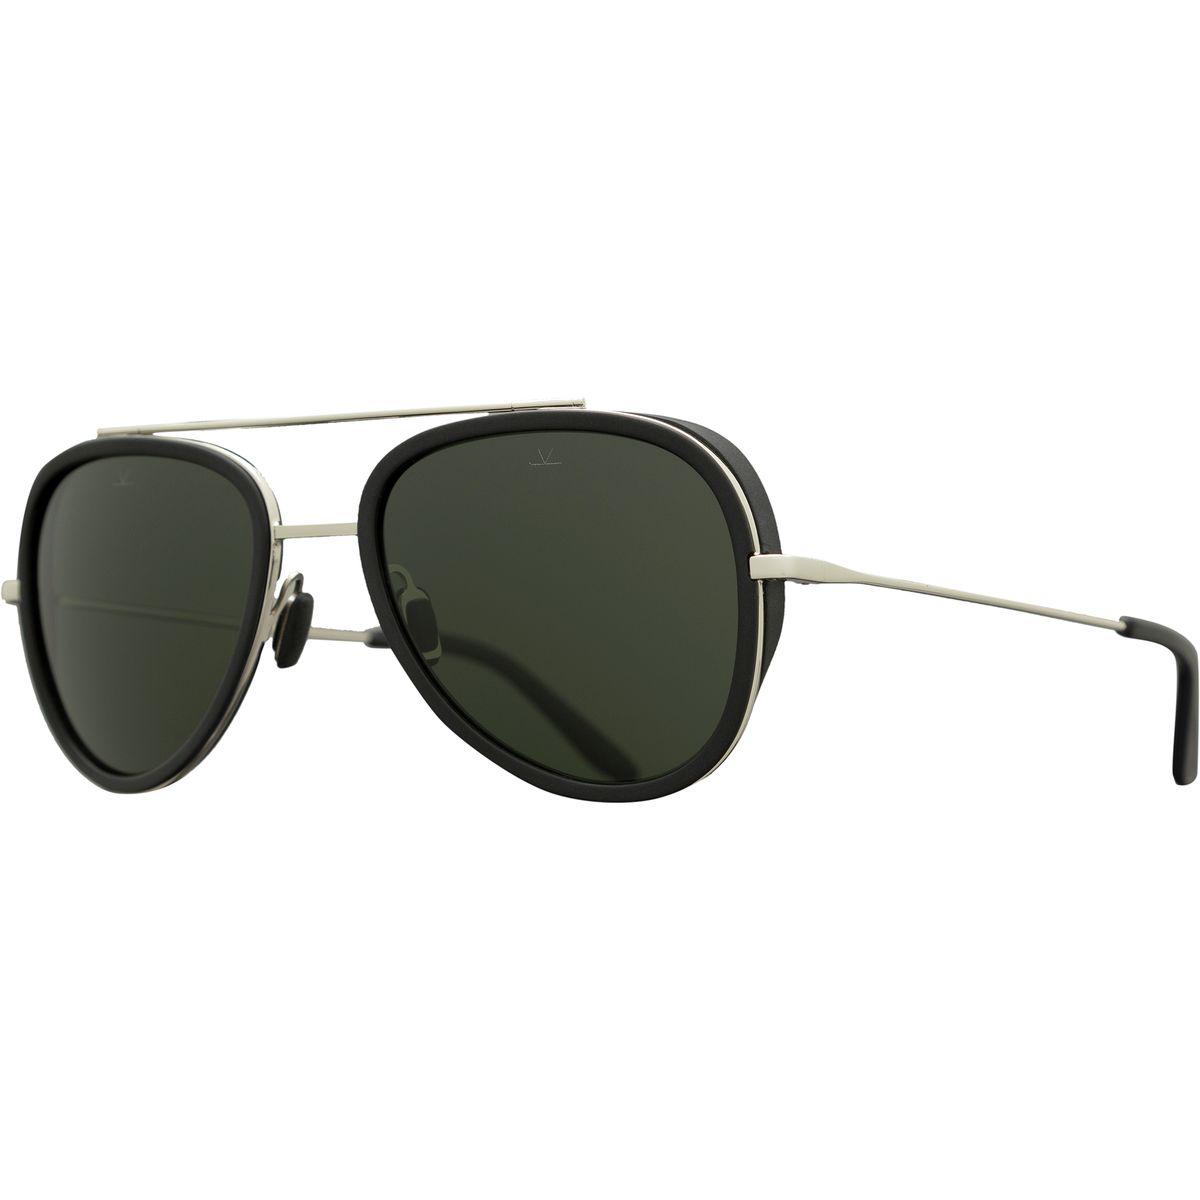 Vuarnet Edge Pilot Vl 1614 Sunglasses in Black for Men - Lyst